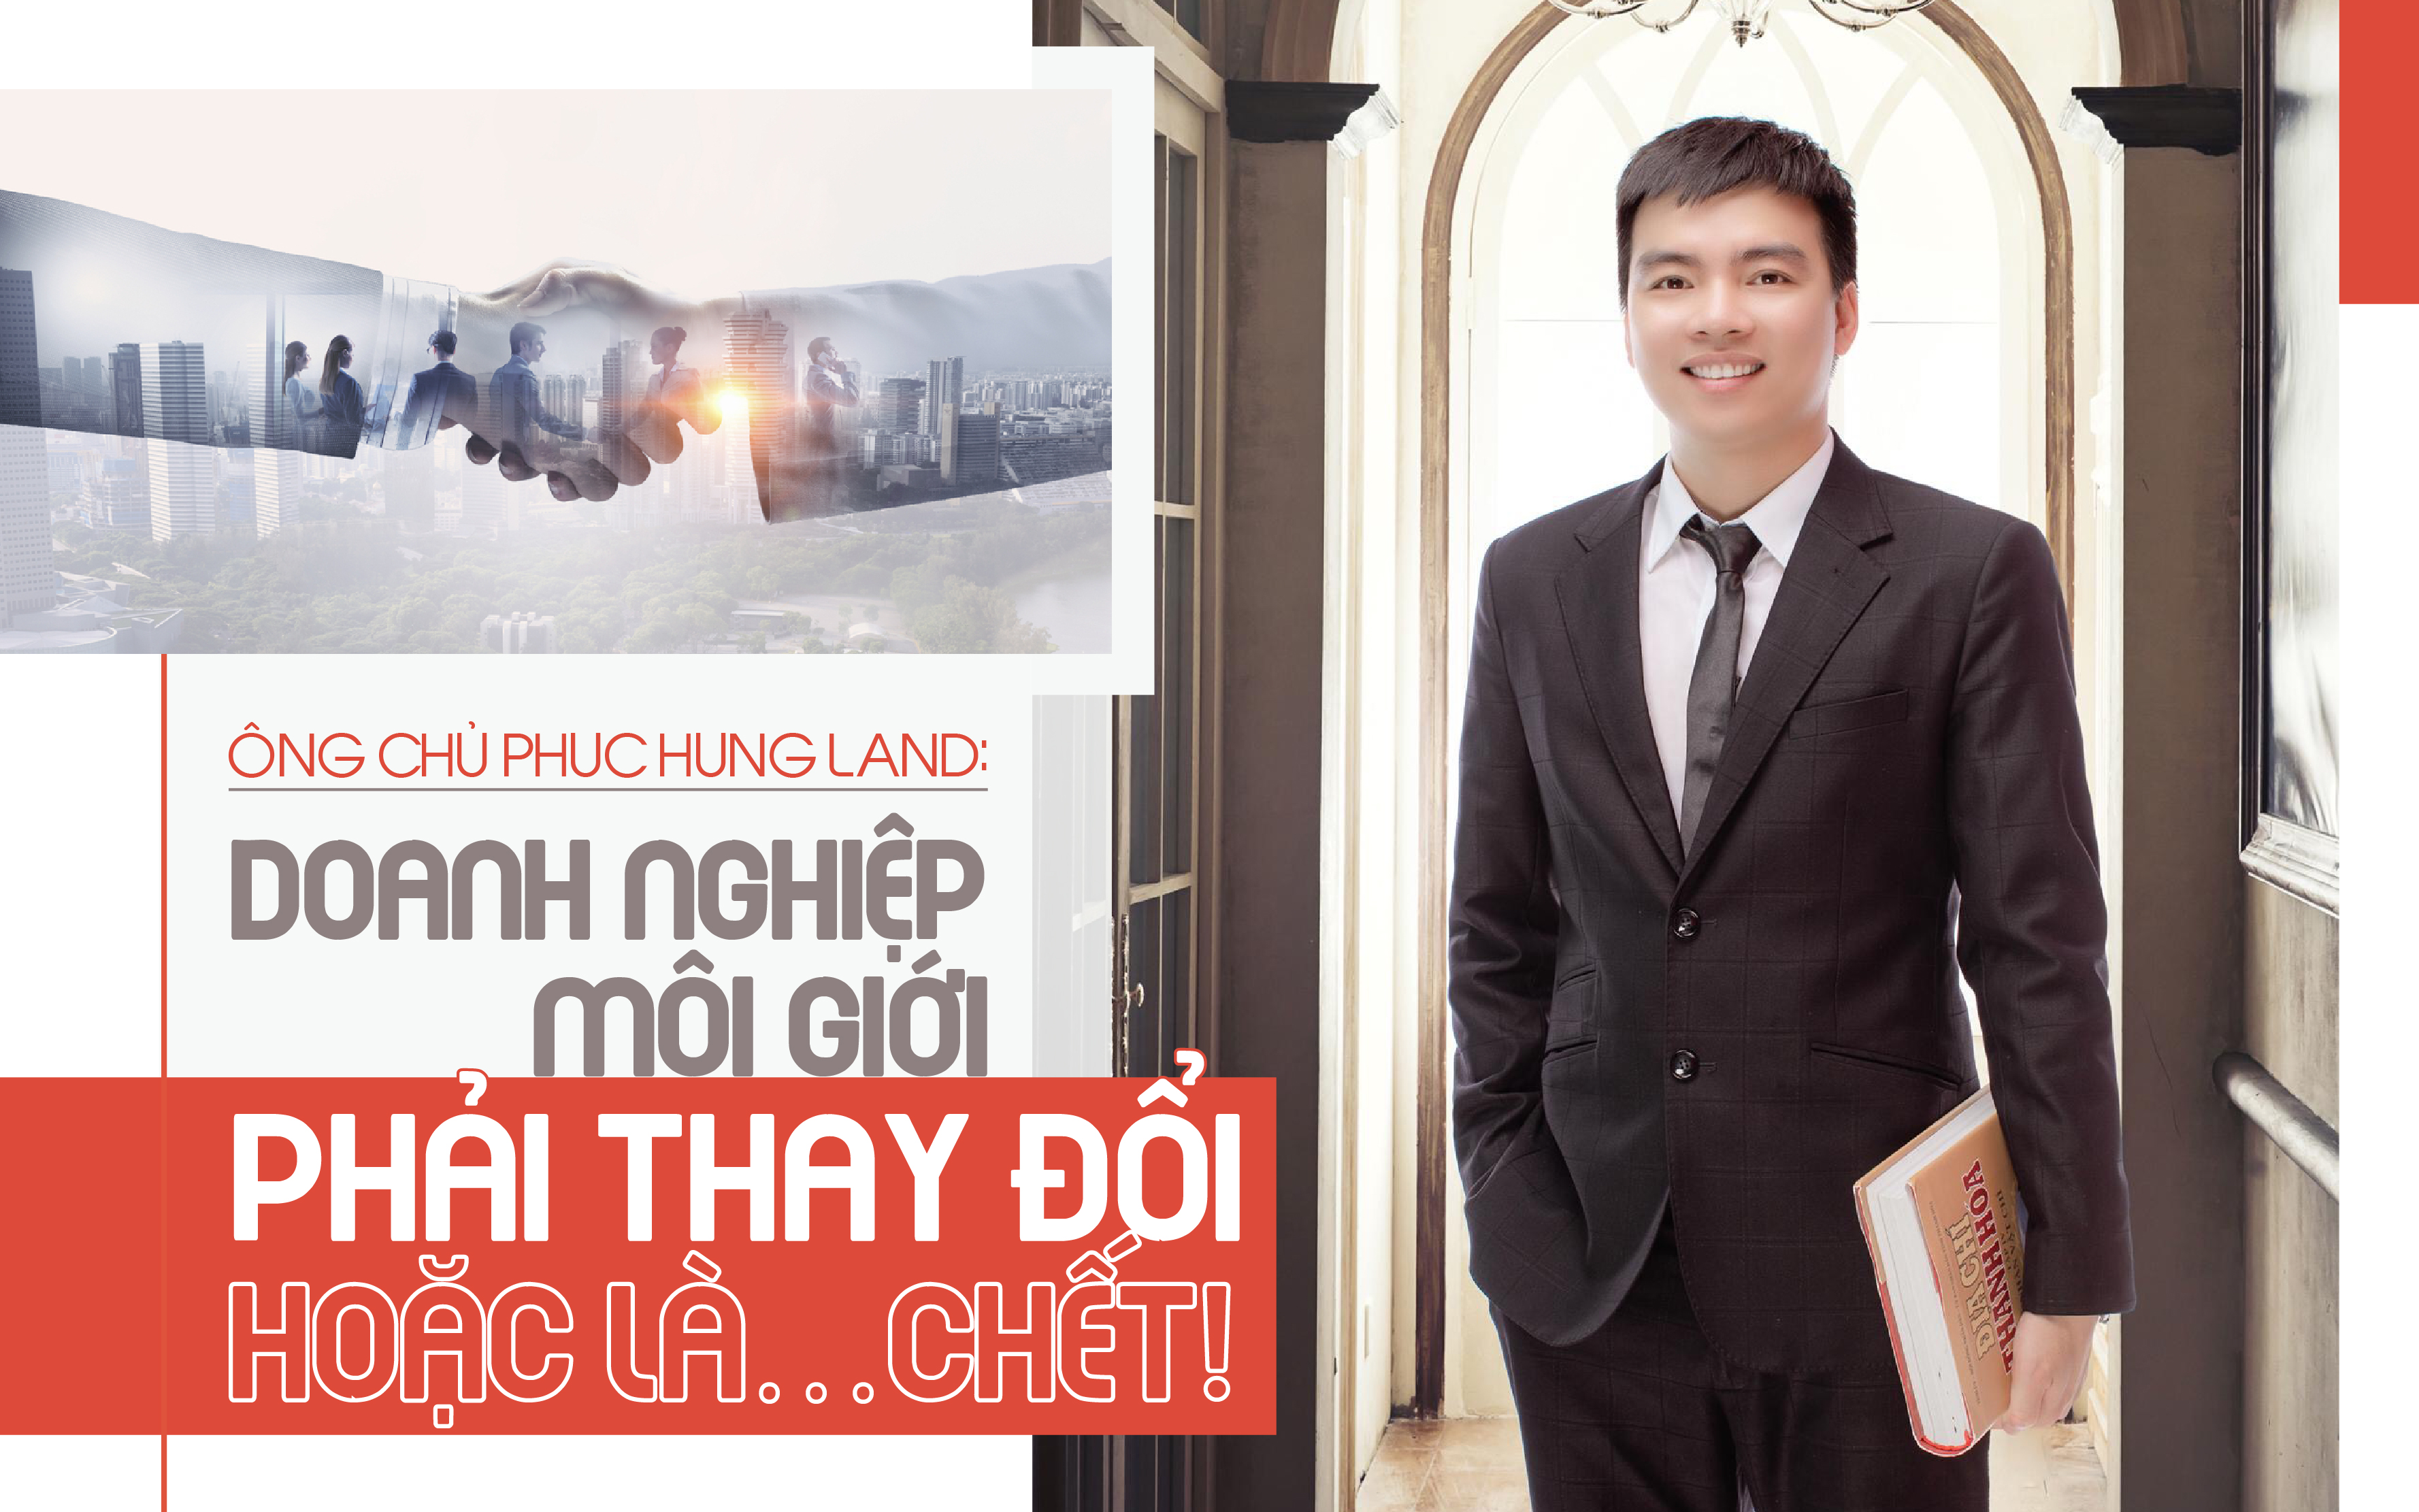 Ông chủ Phuc Hung Land: “Doanh nghiệp môi giới phải thay đổi hoặc là… chết!”